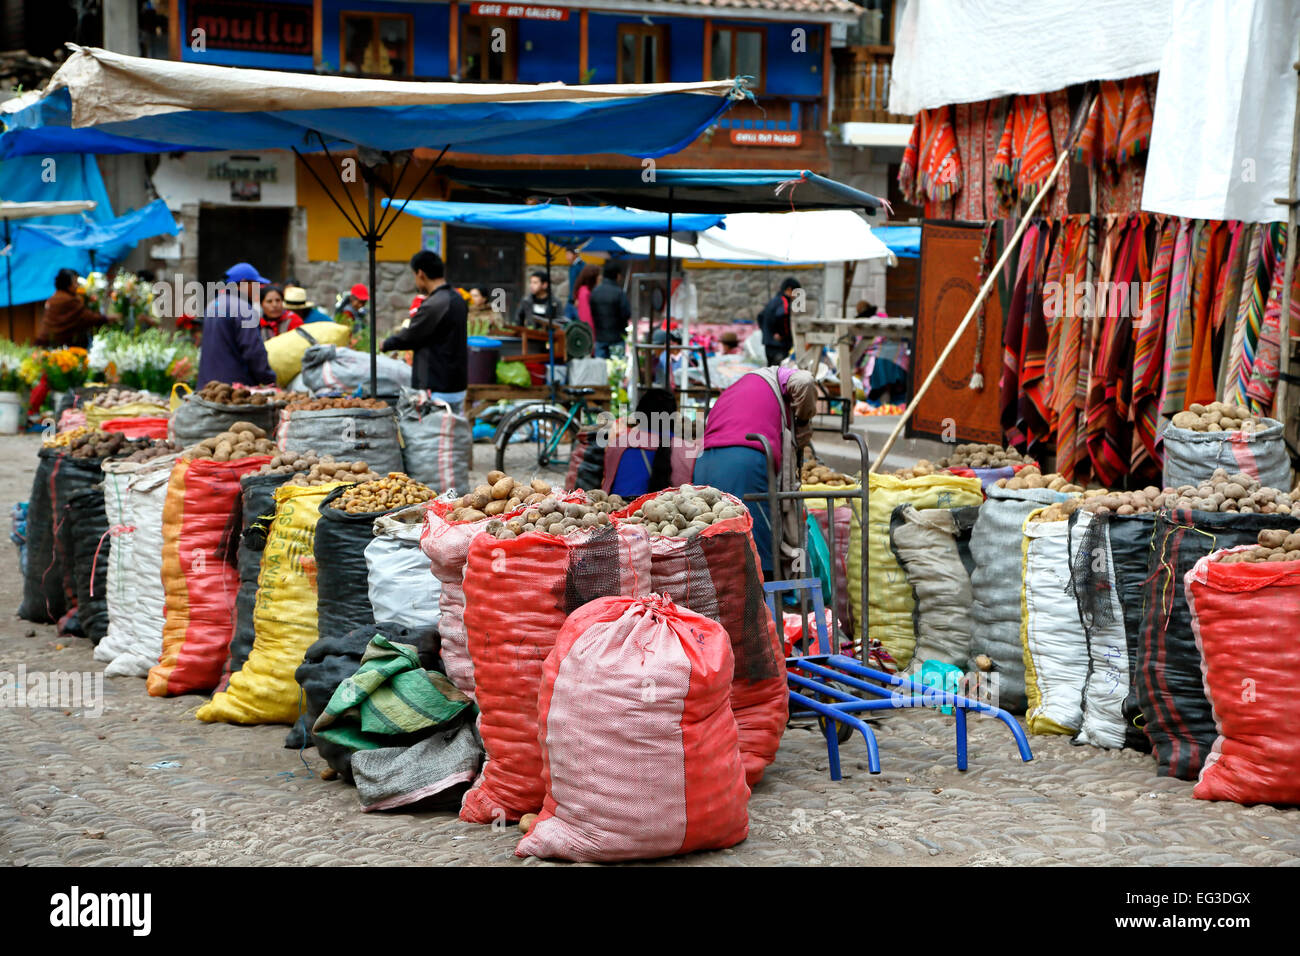 La pomme de terre pour la vente, marché de Pisac Le dimanche, Cusco, Pérou Banque D'Images